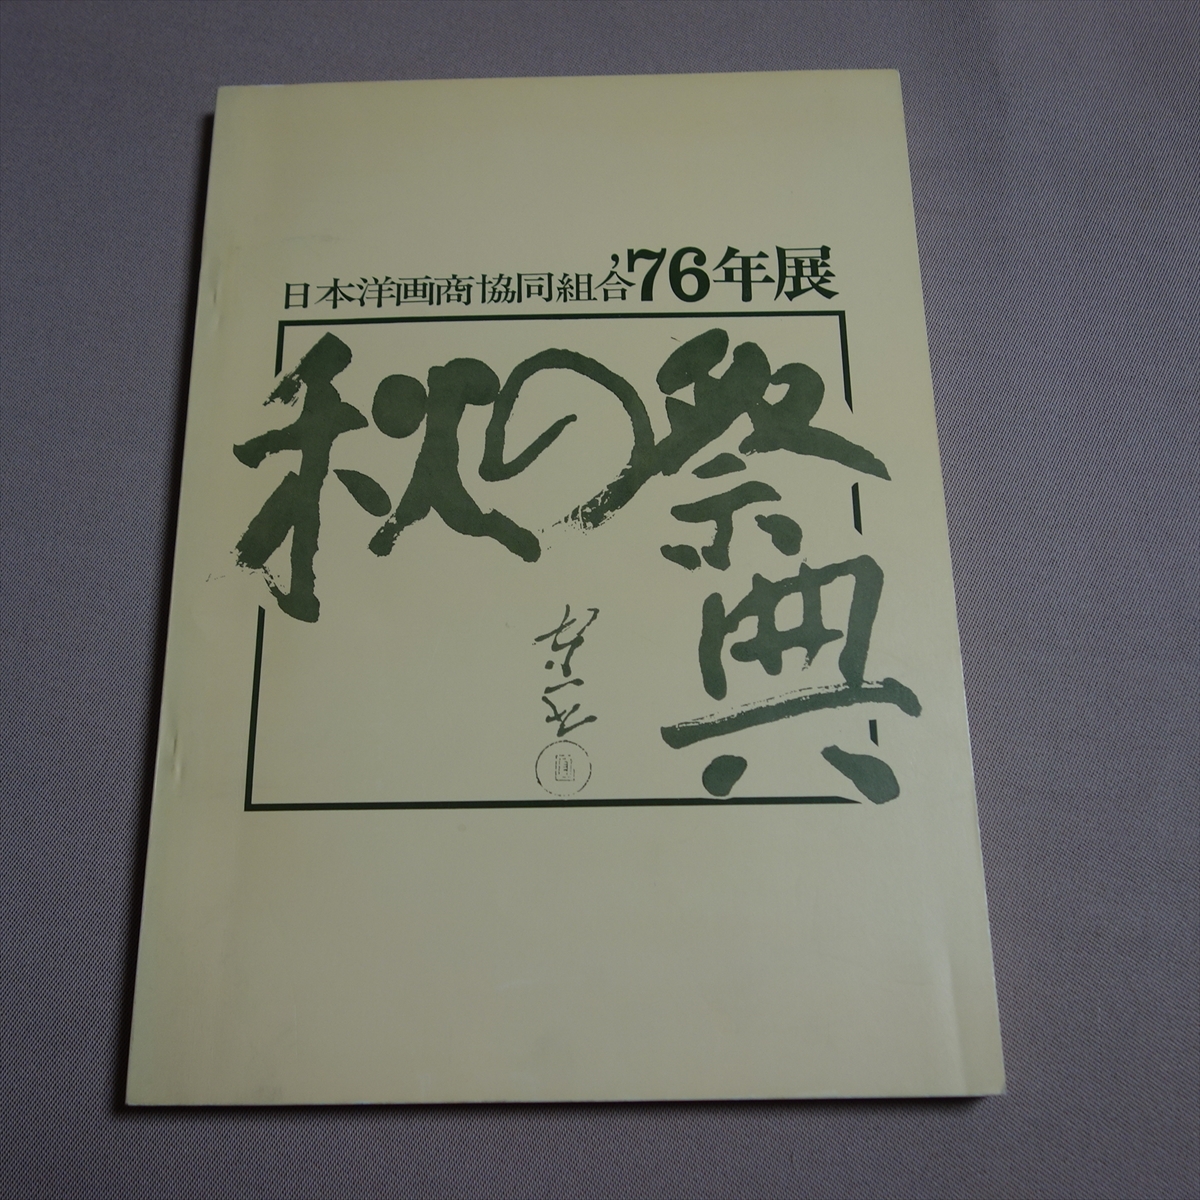 일본 서양 미술상 협회 '76 전 가을 축제 / 카탈로그 쇼와, 그림, 그림책, 수집, 목록